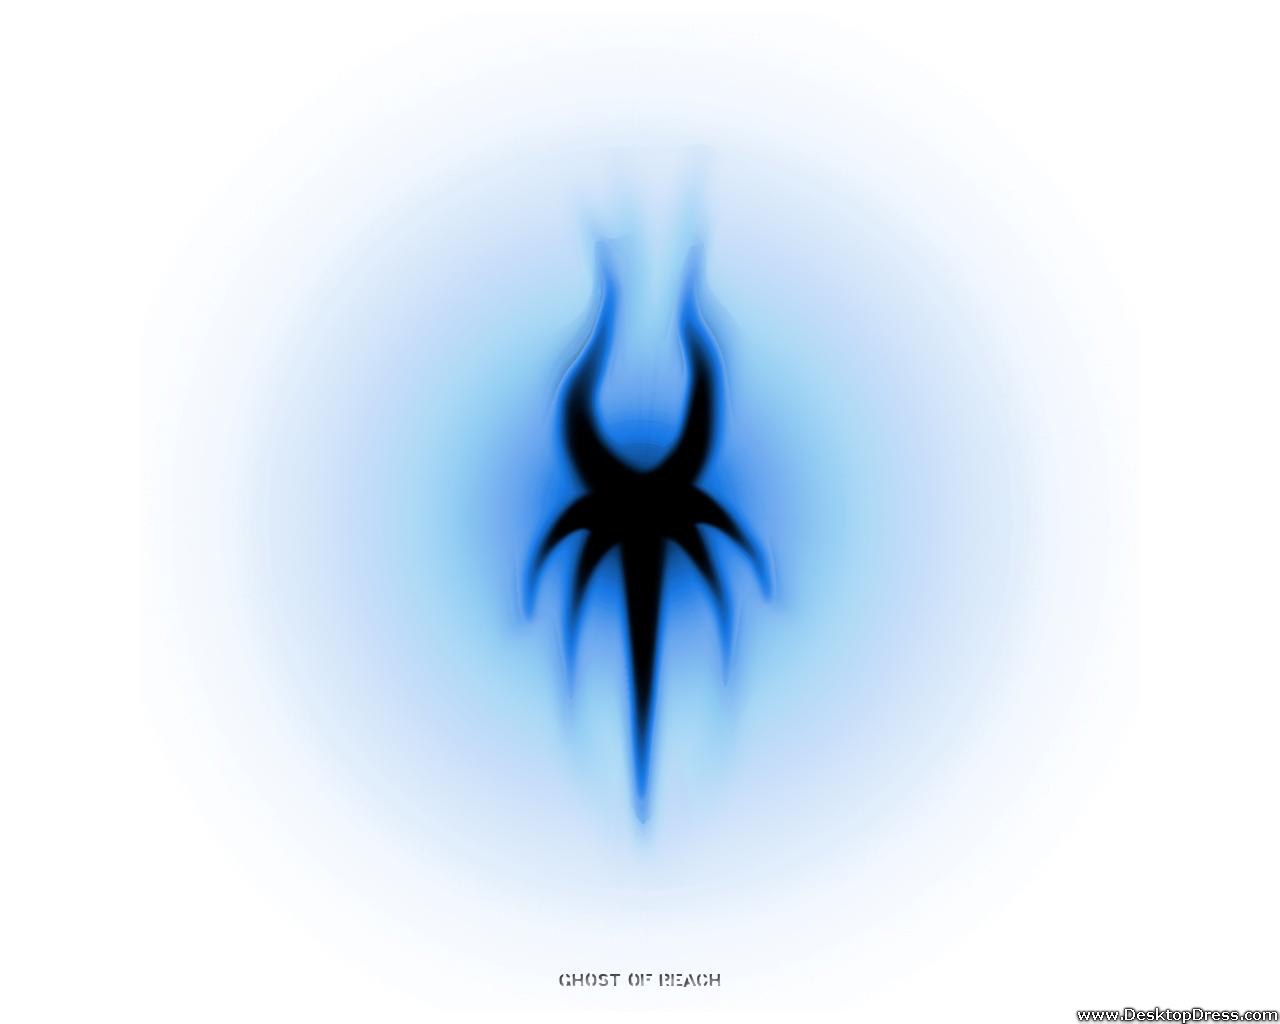 Ghost Of Reach - Ghost Logo Wallpaper 3d - 1280x1024 Wallpaper 